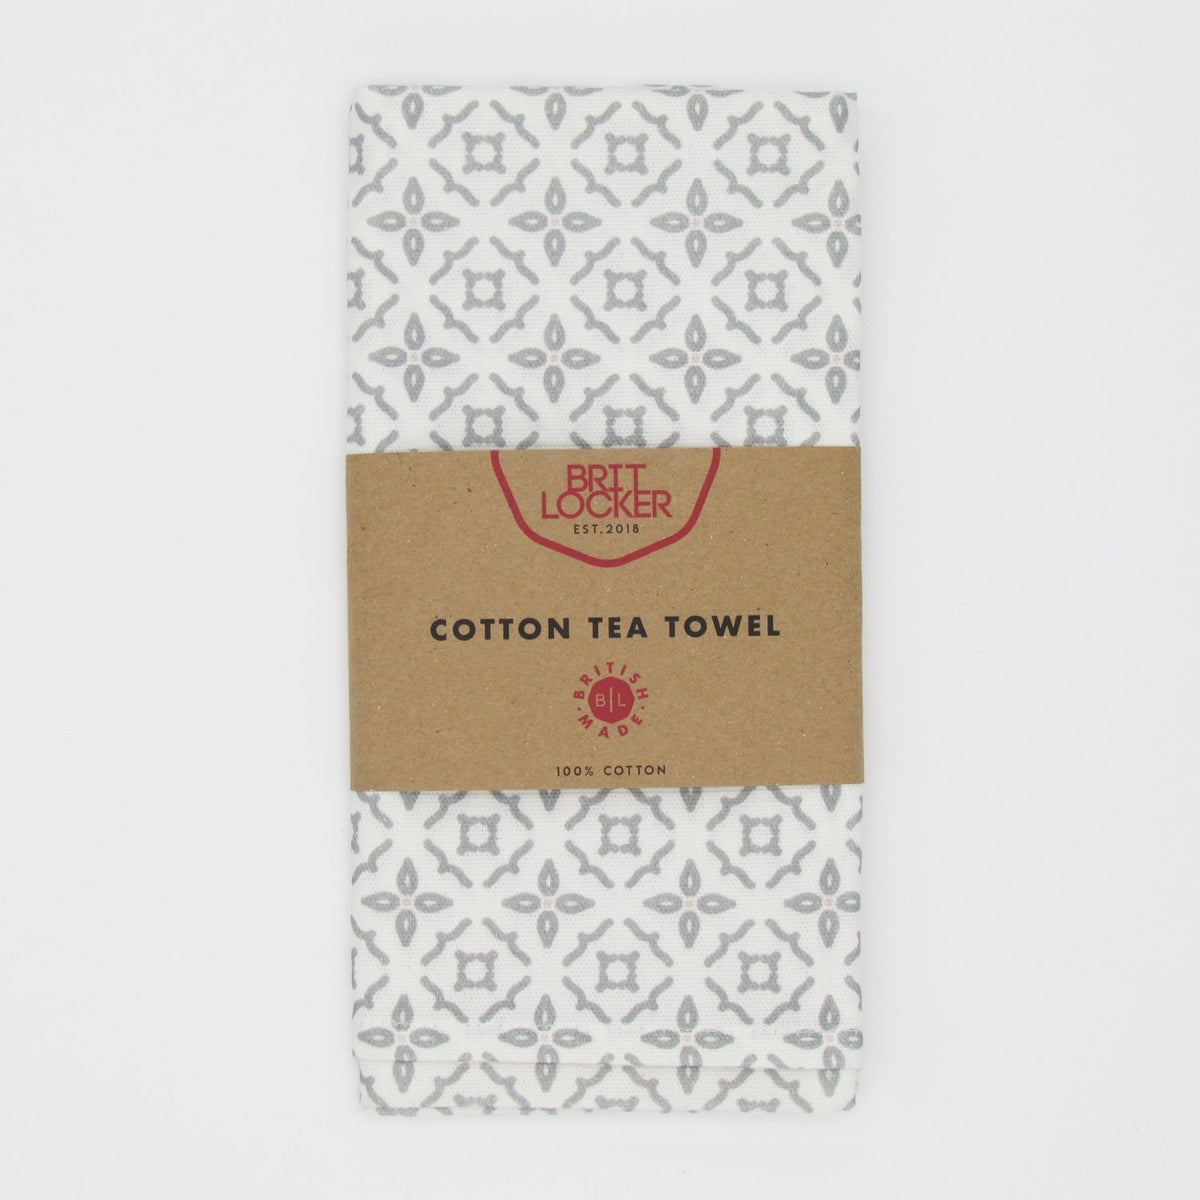 Cotton tea towel - White and Grey Kitchen - Made in Britain - BRIT LOCKER